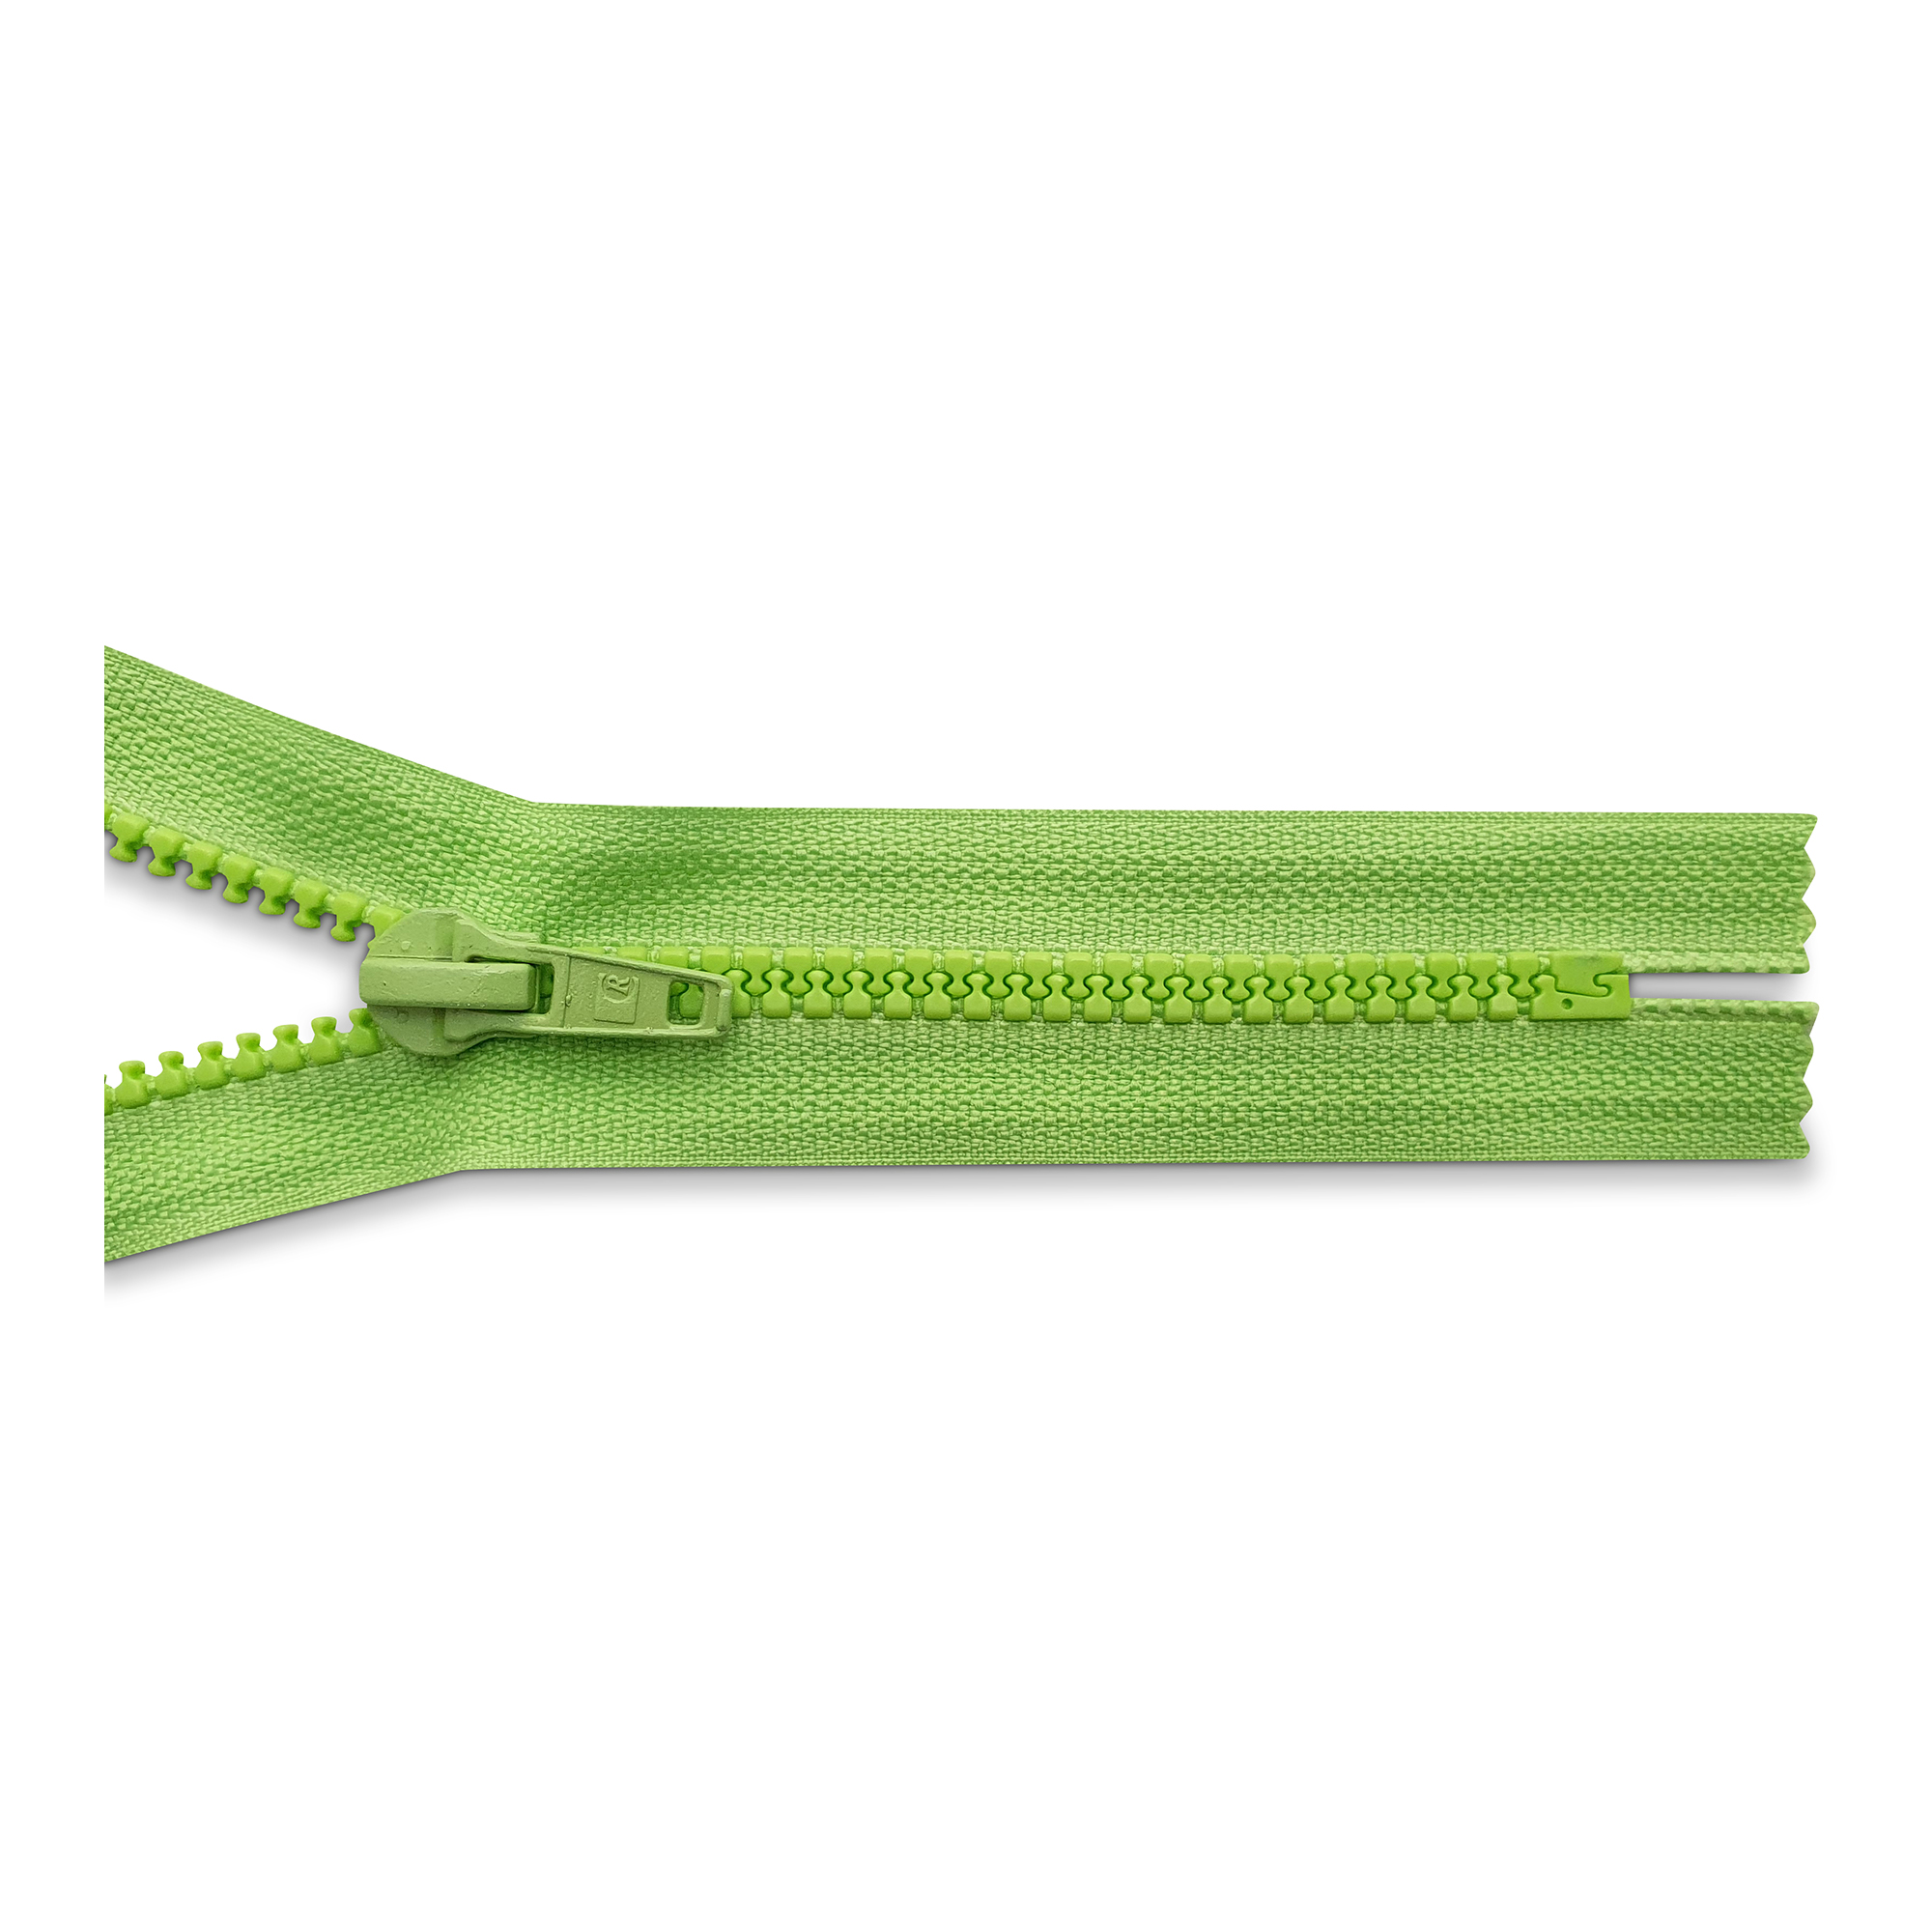 Reißverschluss 16cm, nicht teilbar, K.stoff Zähne breit, apfelgrün, hochwertiger Marken-Reißverschluss von Rubi/Barcelona